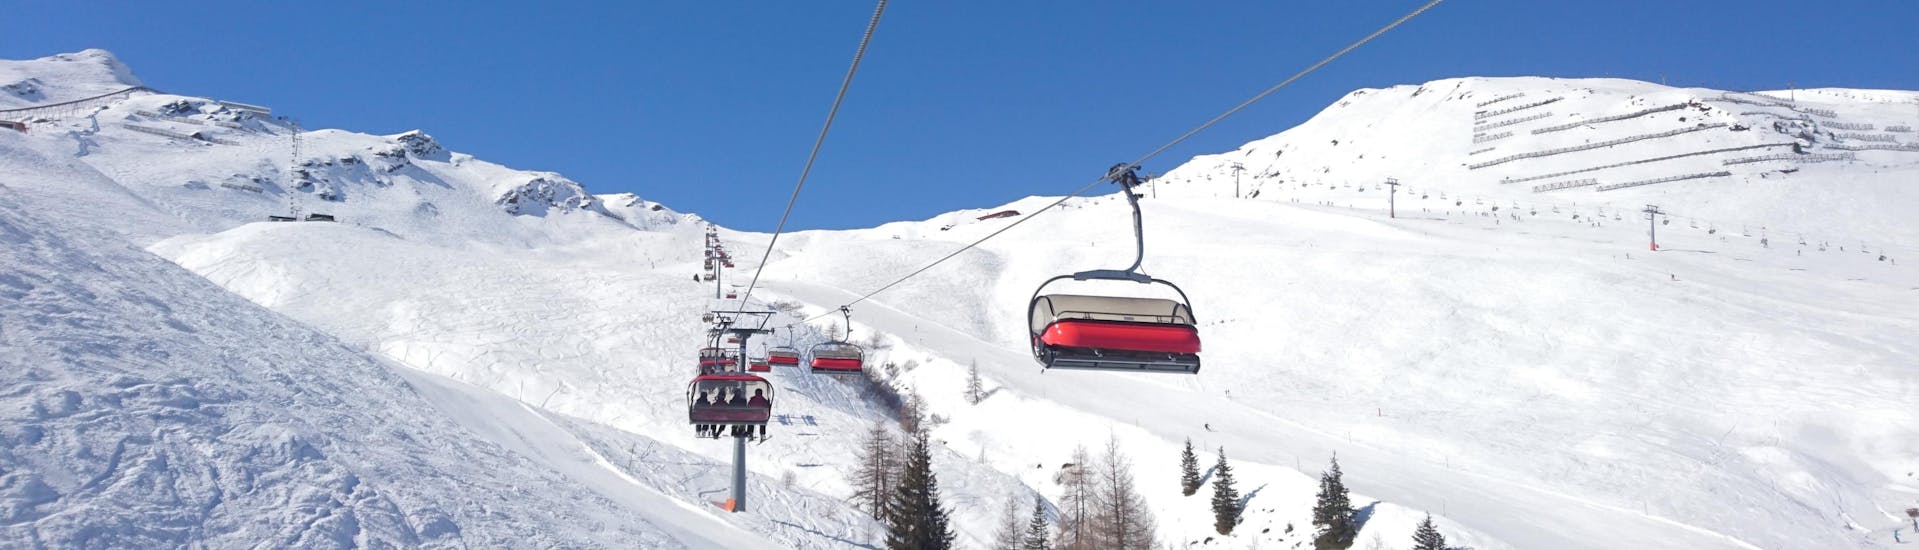 Impianto di risalita sulle piste di Götzens - Muttereralm, dove è possibile prenotare lezioni di sci.